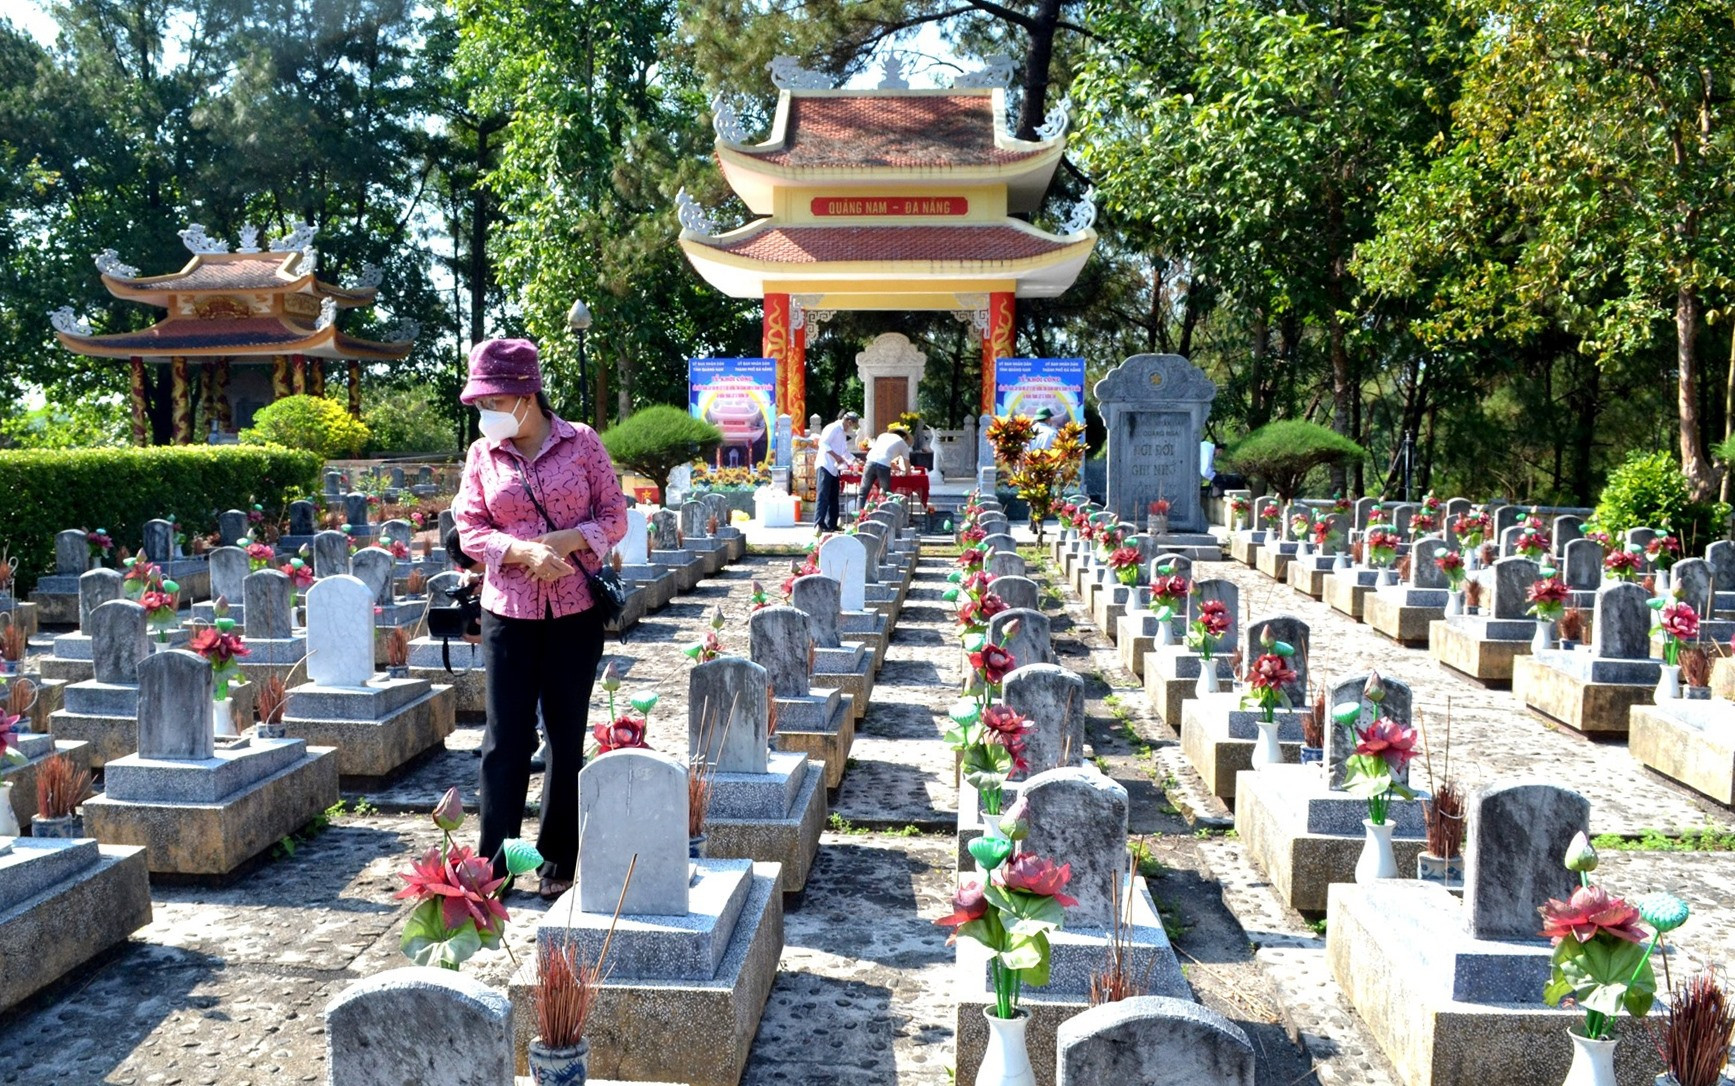 Khu mộ liệt sĩ quê hương Quảng Nam - Đà Nẵng đã xuống cấp cần được đầu tư tôn tạo. Ảnh: Q.VIỆT